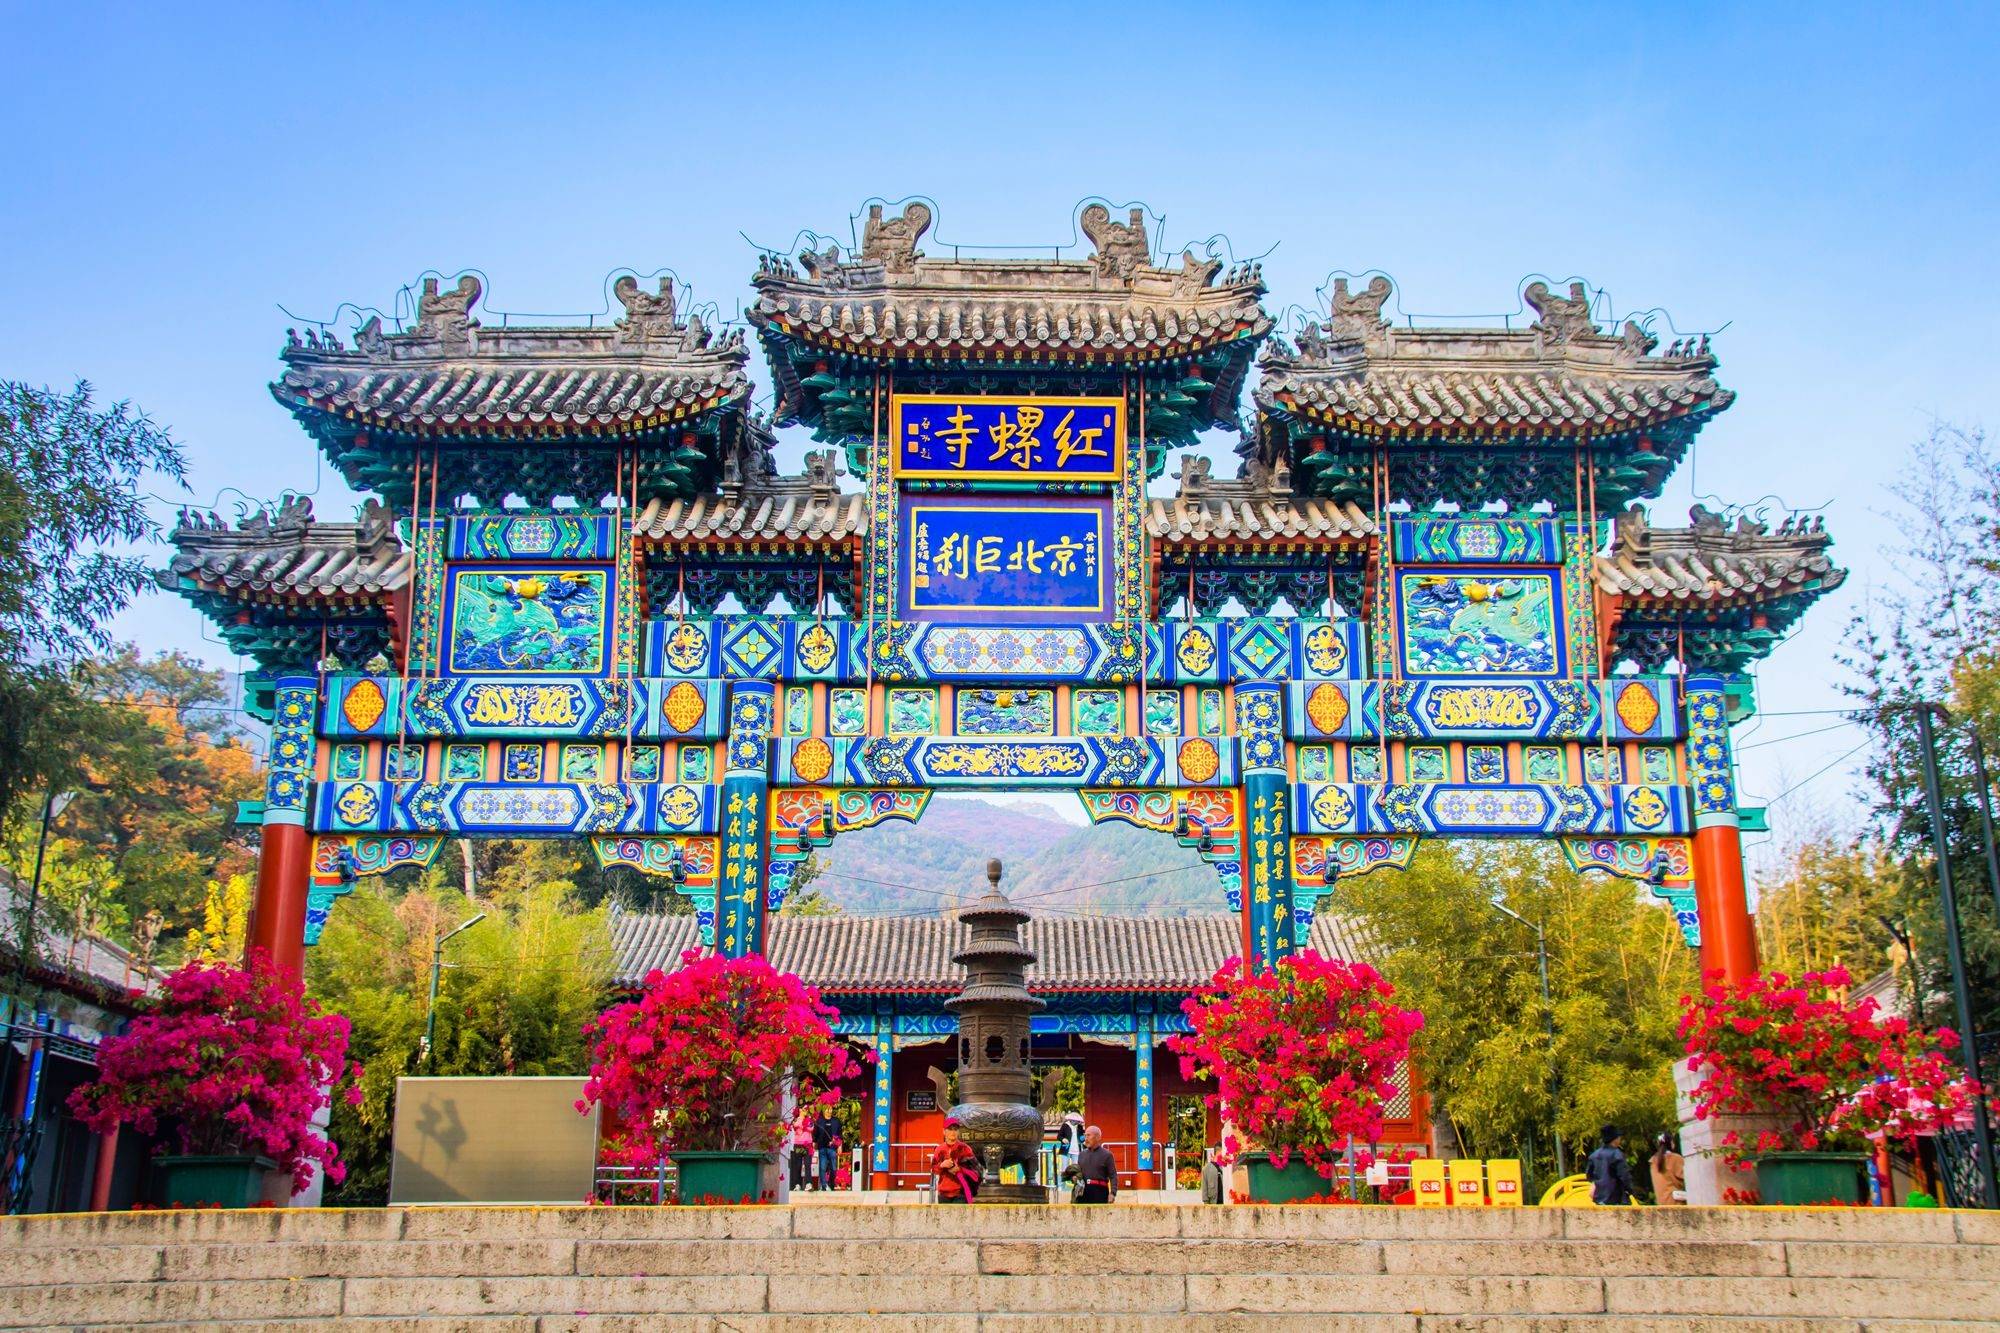 墨脱|北京怀柔红螺寺，一树繁盛满眼金蝶，赏千年古刹绝美秋色